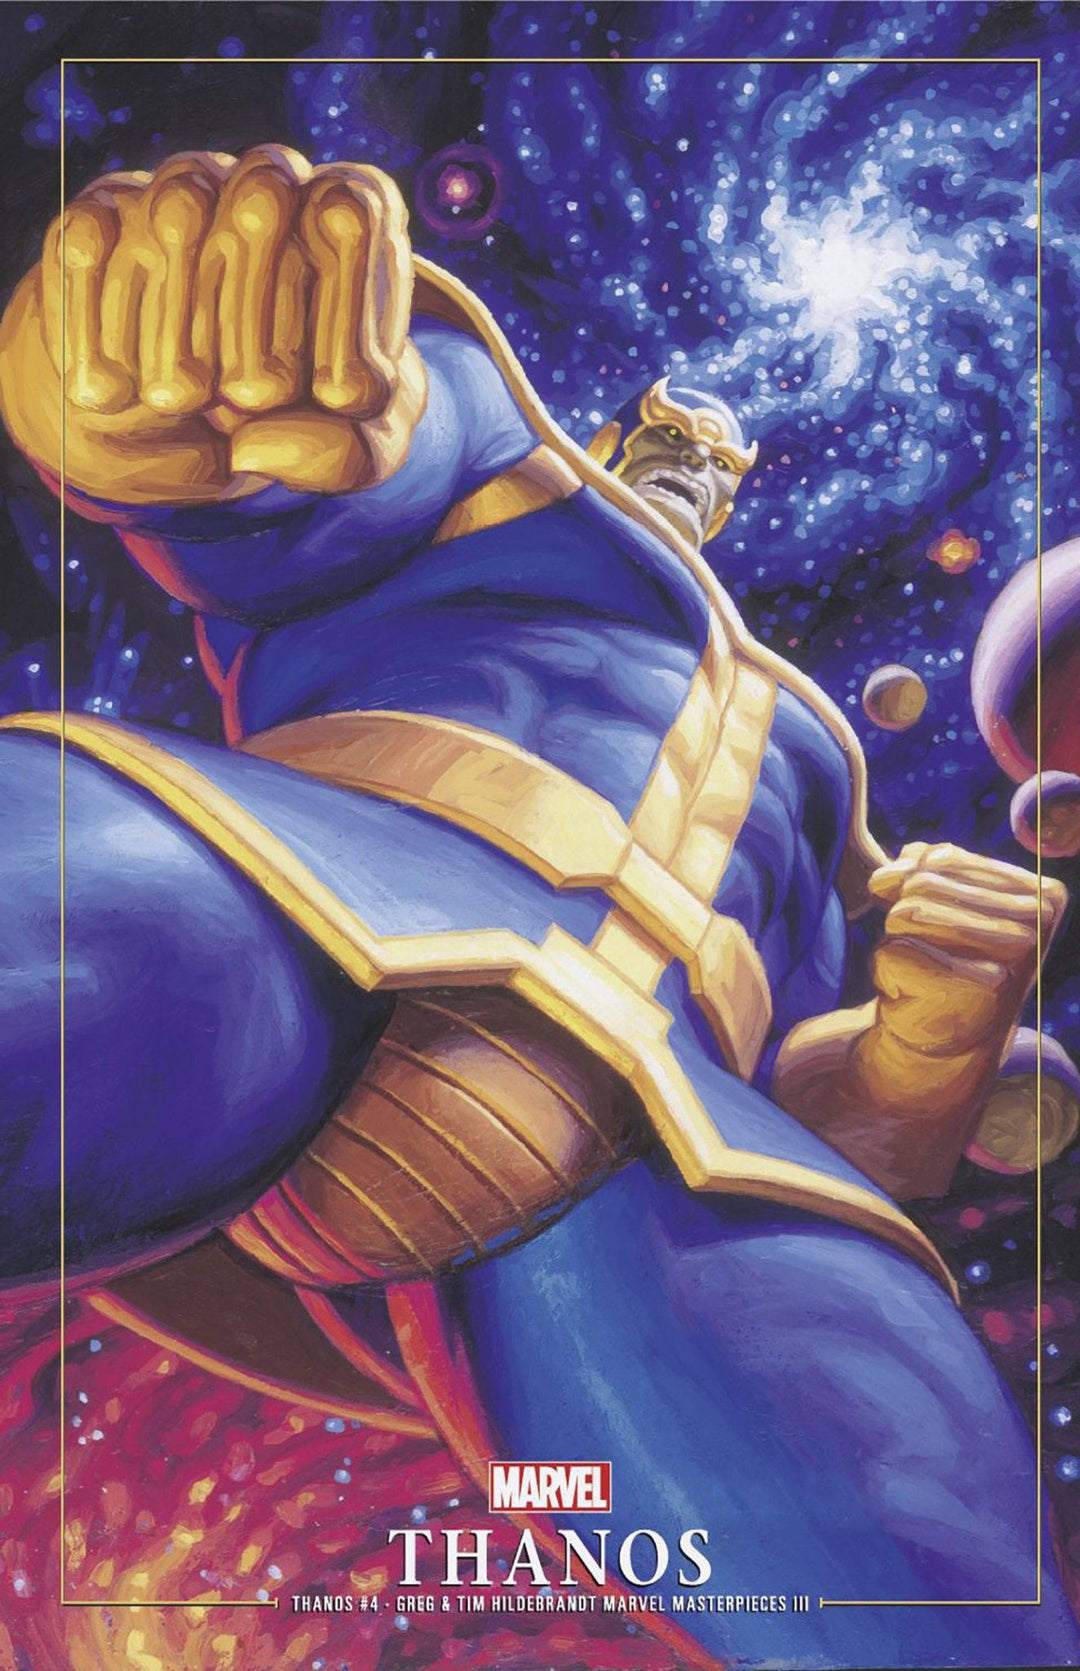 Thanos #4 Greg And Tim Hildebrandt Thanos Marvel Masterpieces III Variant - gabescaveccc